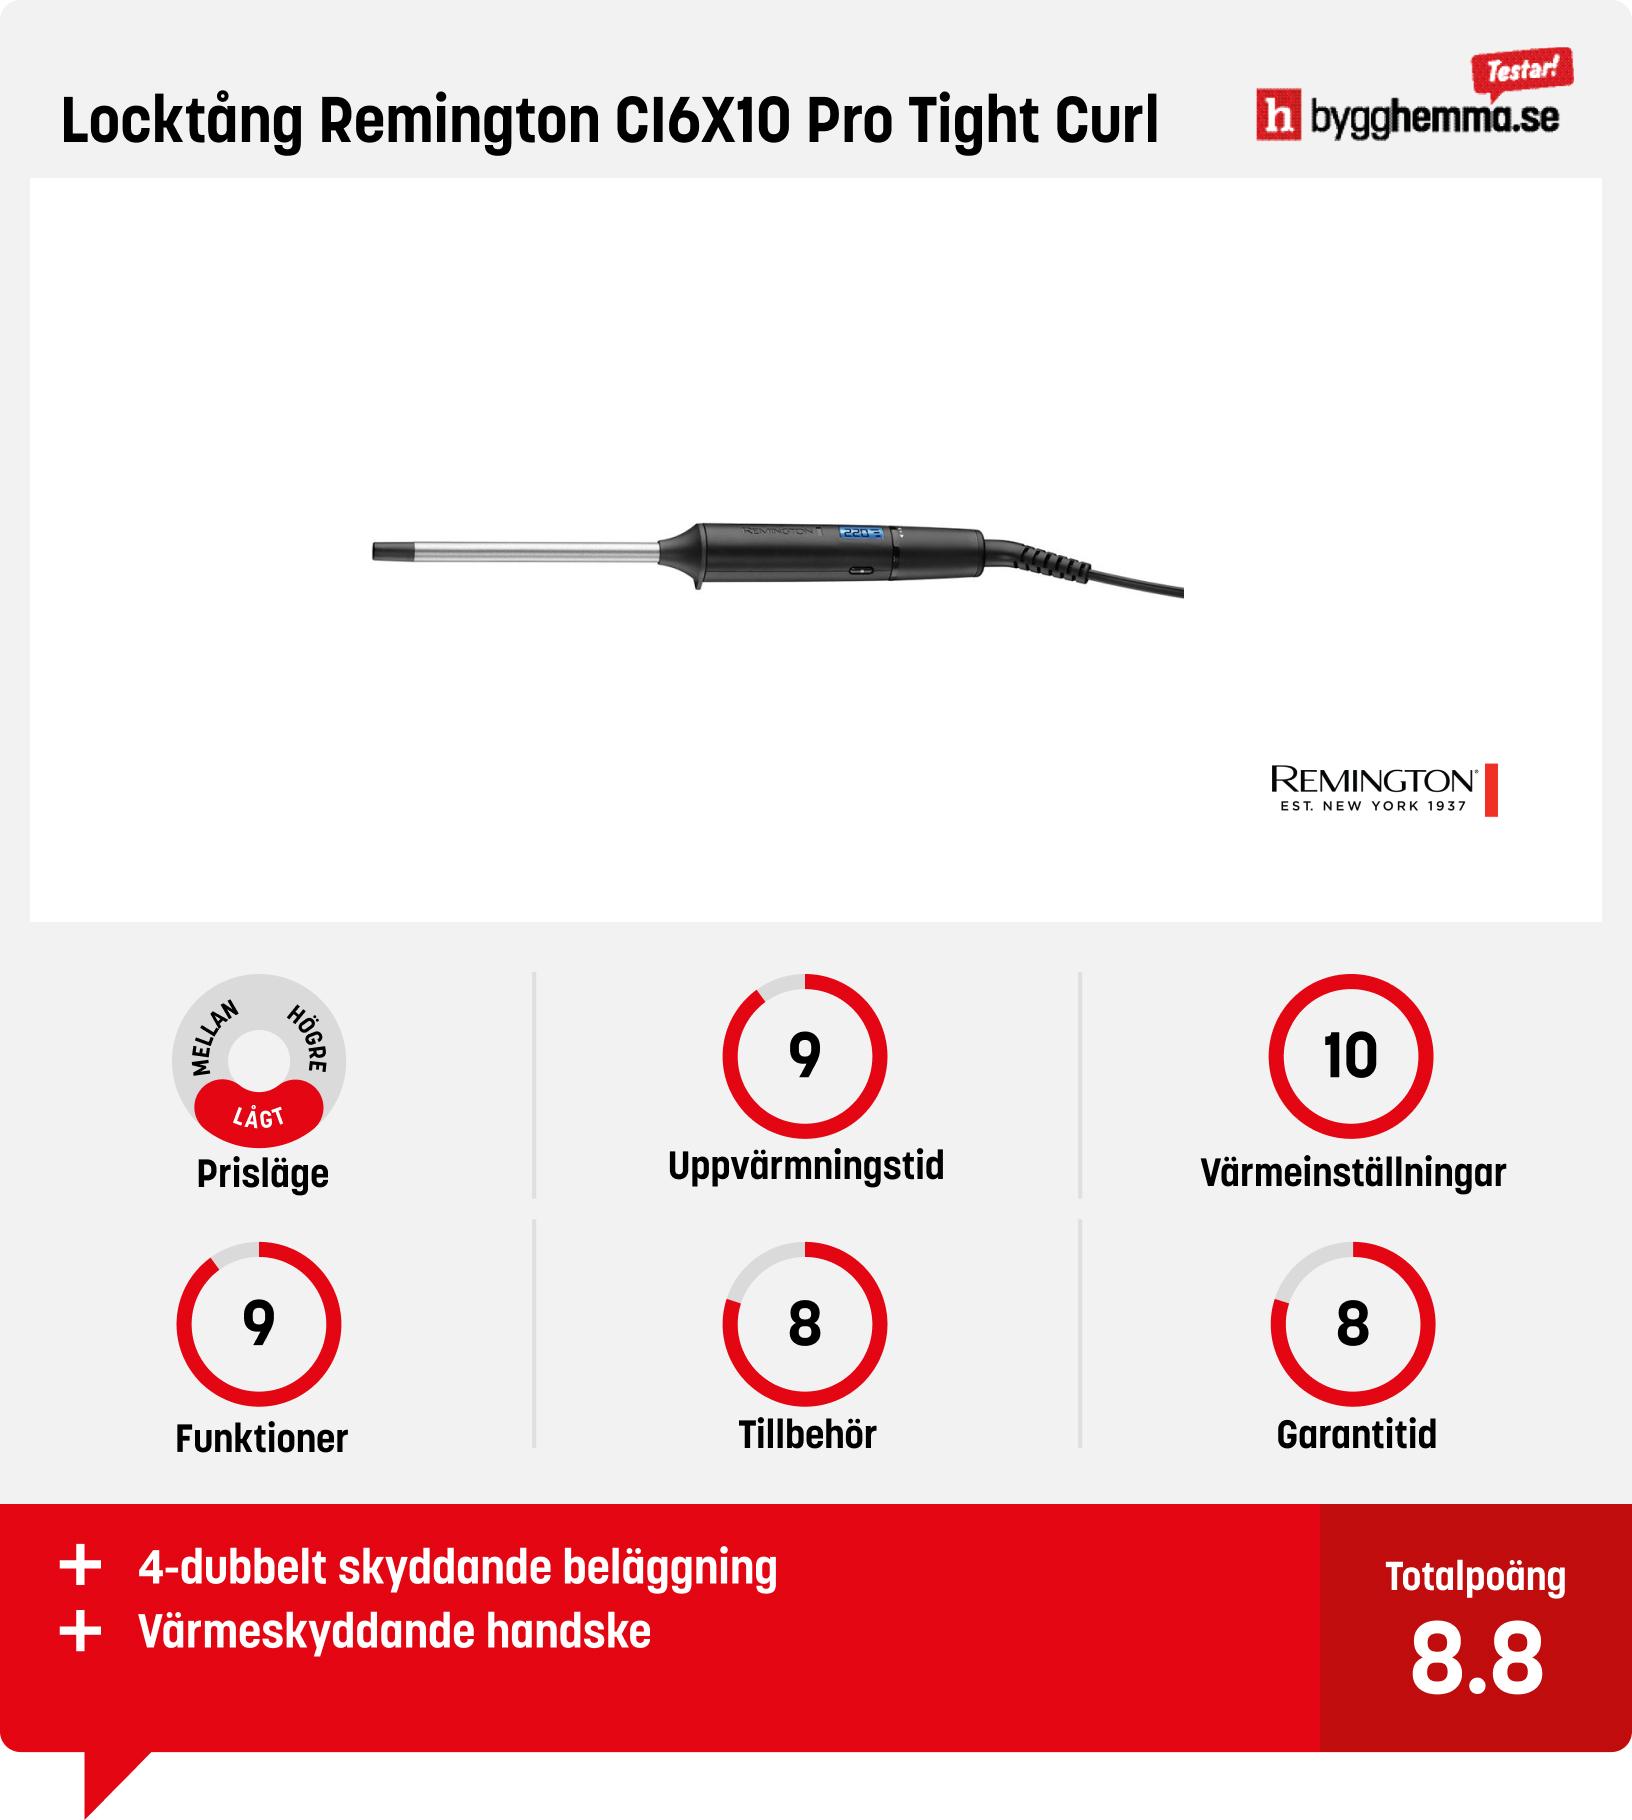 Locktång bäst i test - Locktång Remington CI6X10 Pro Tight Curl